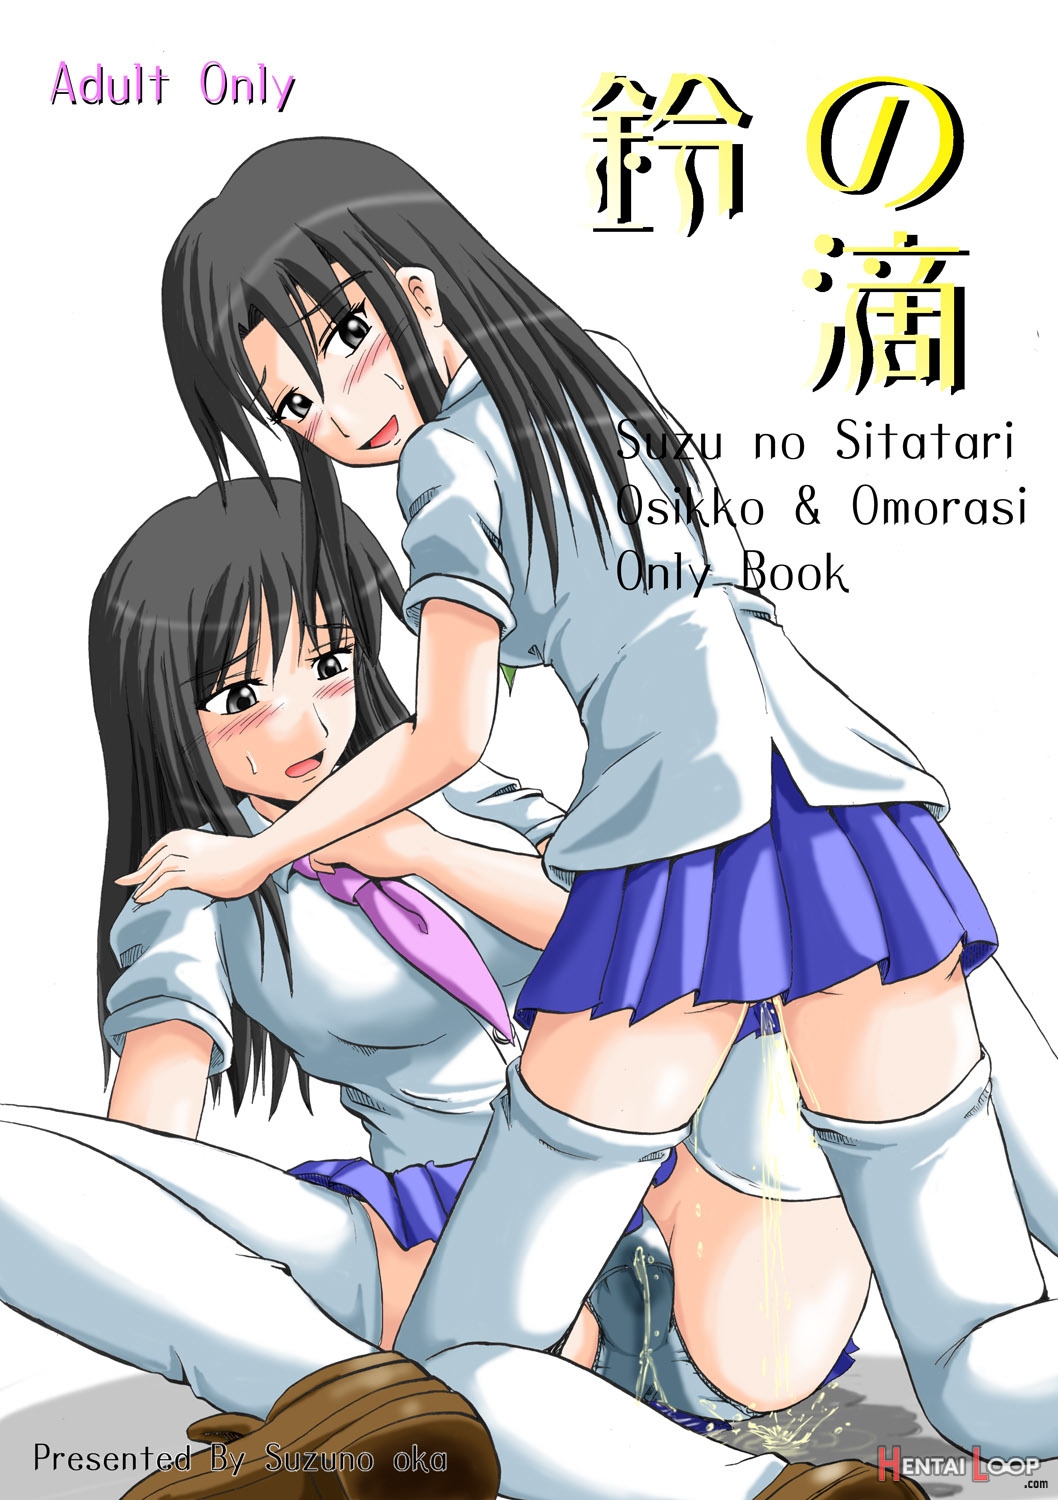 Suzu No Shitatari page 1